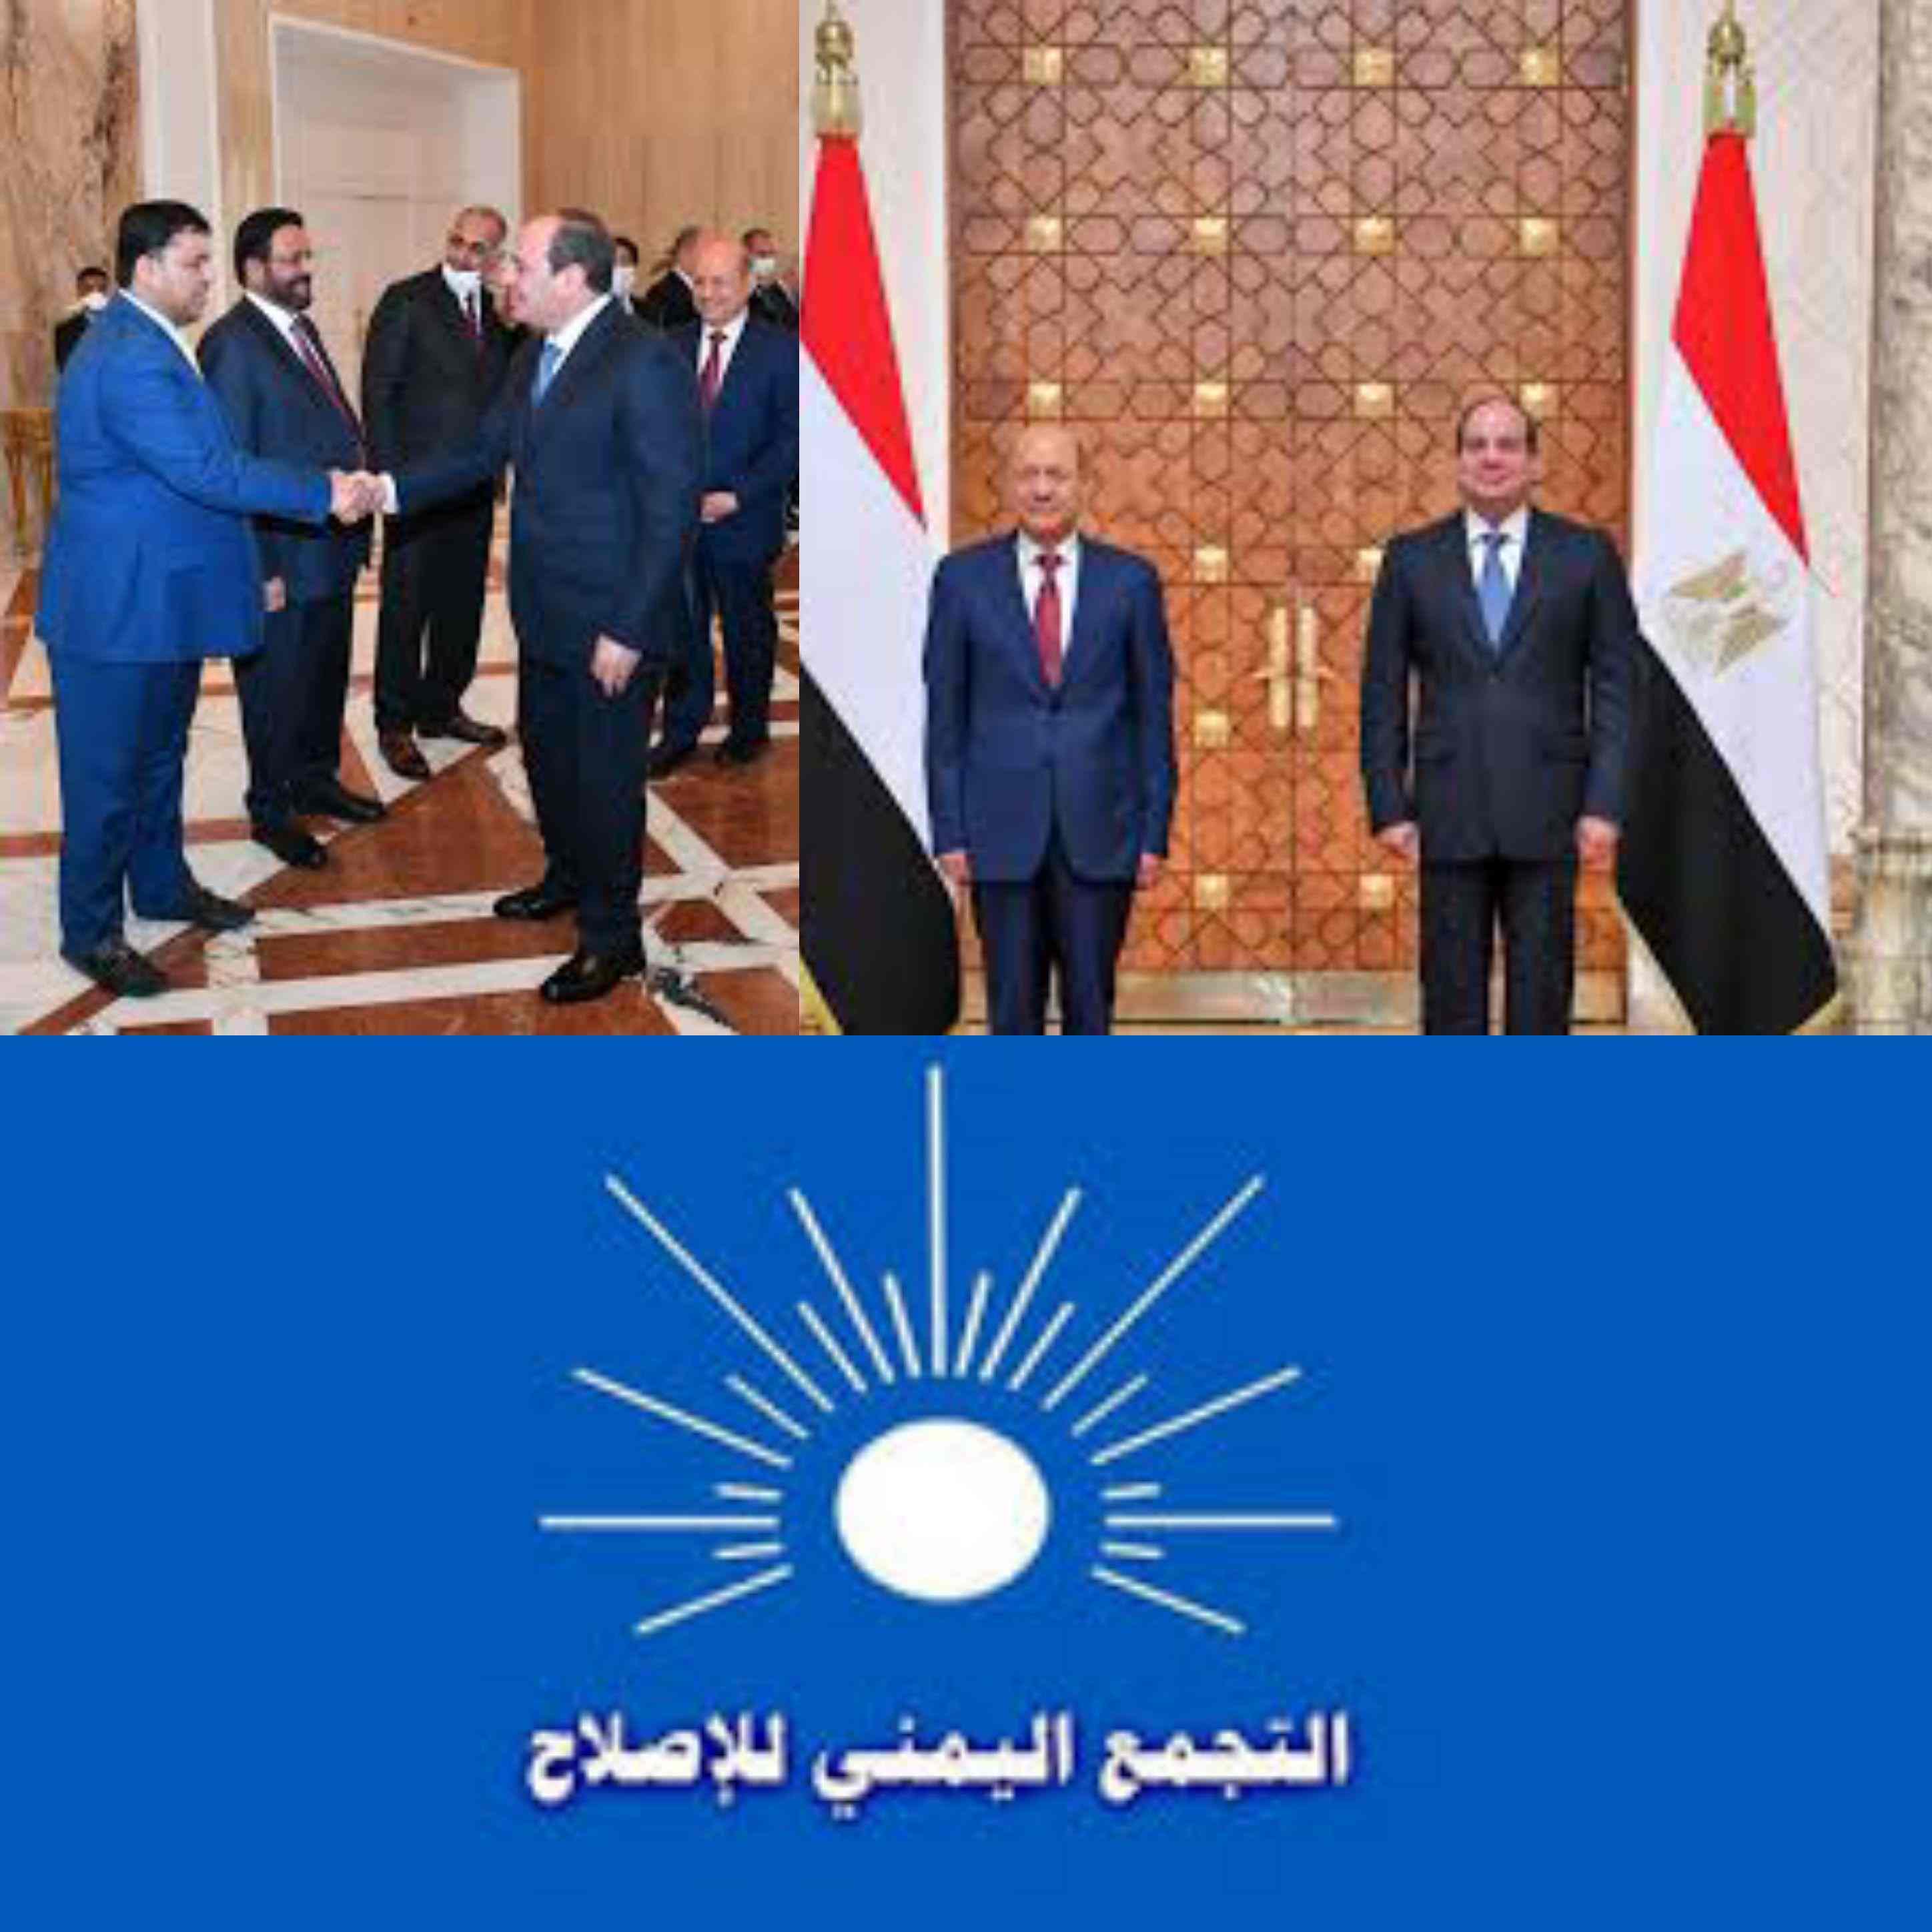 القاهرة أخطر ثلاث قيادات في الجماعة الارهابية تقتحم مكتب الرئيس السيسي بالاتحادية في وجود الرئيس اليمني تفاصيل